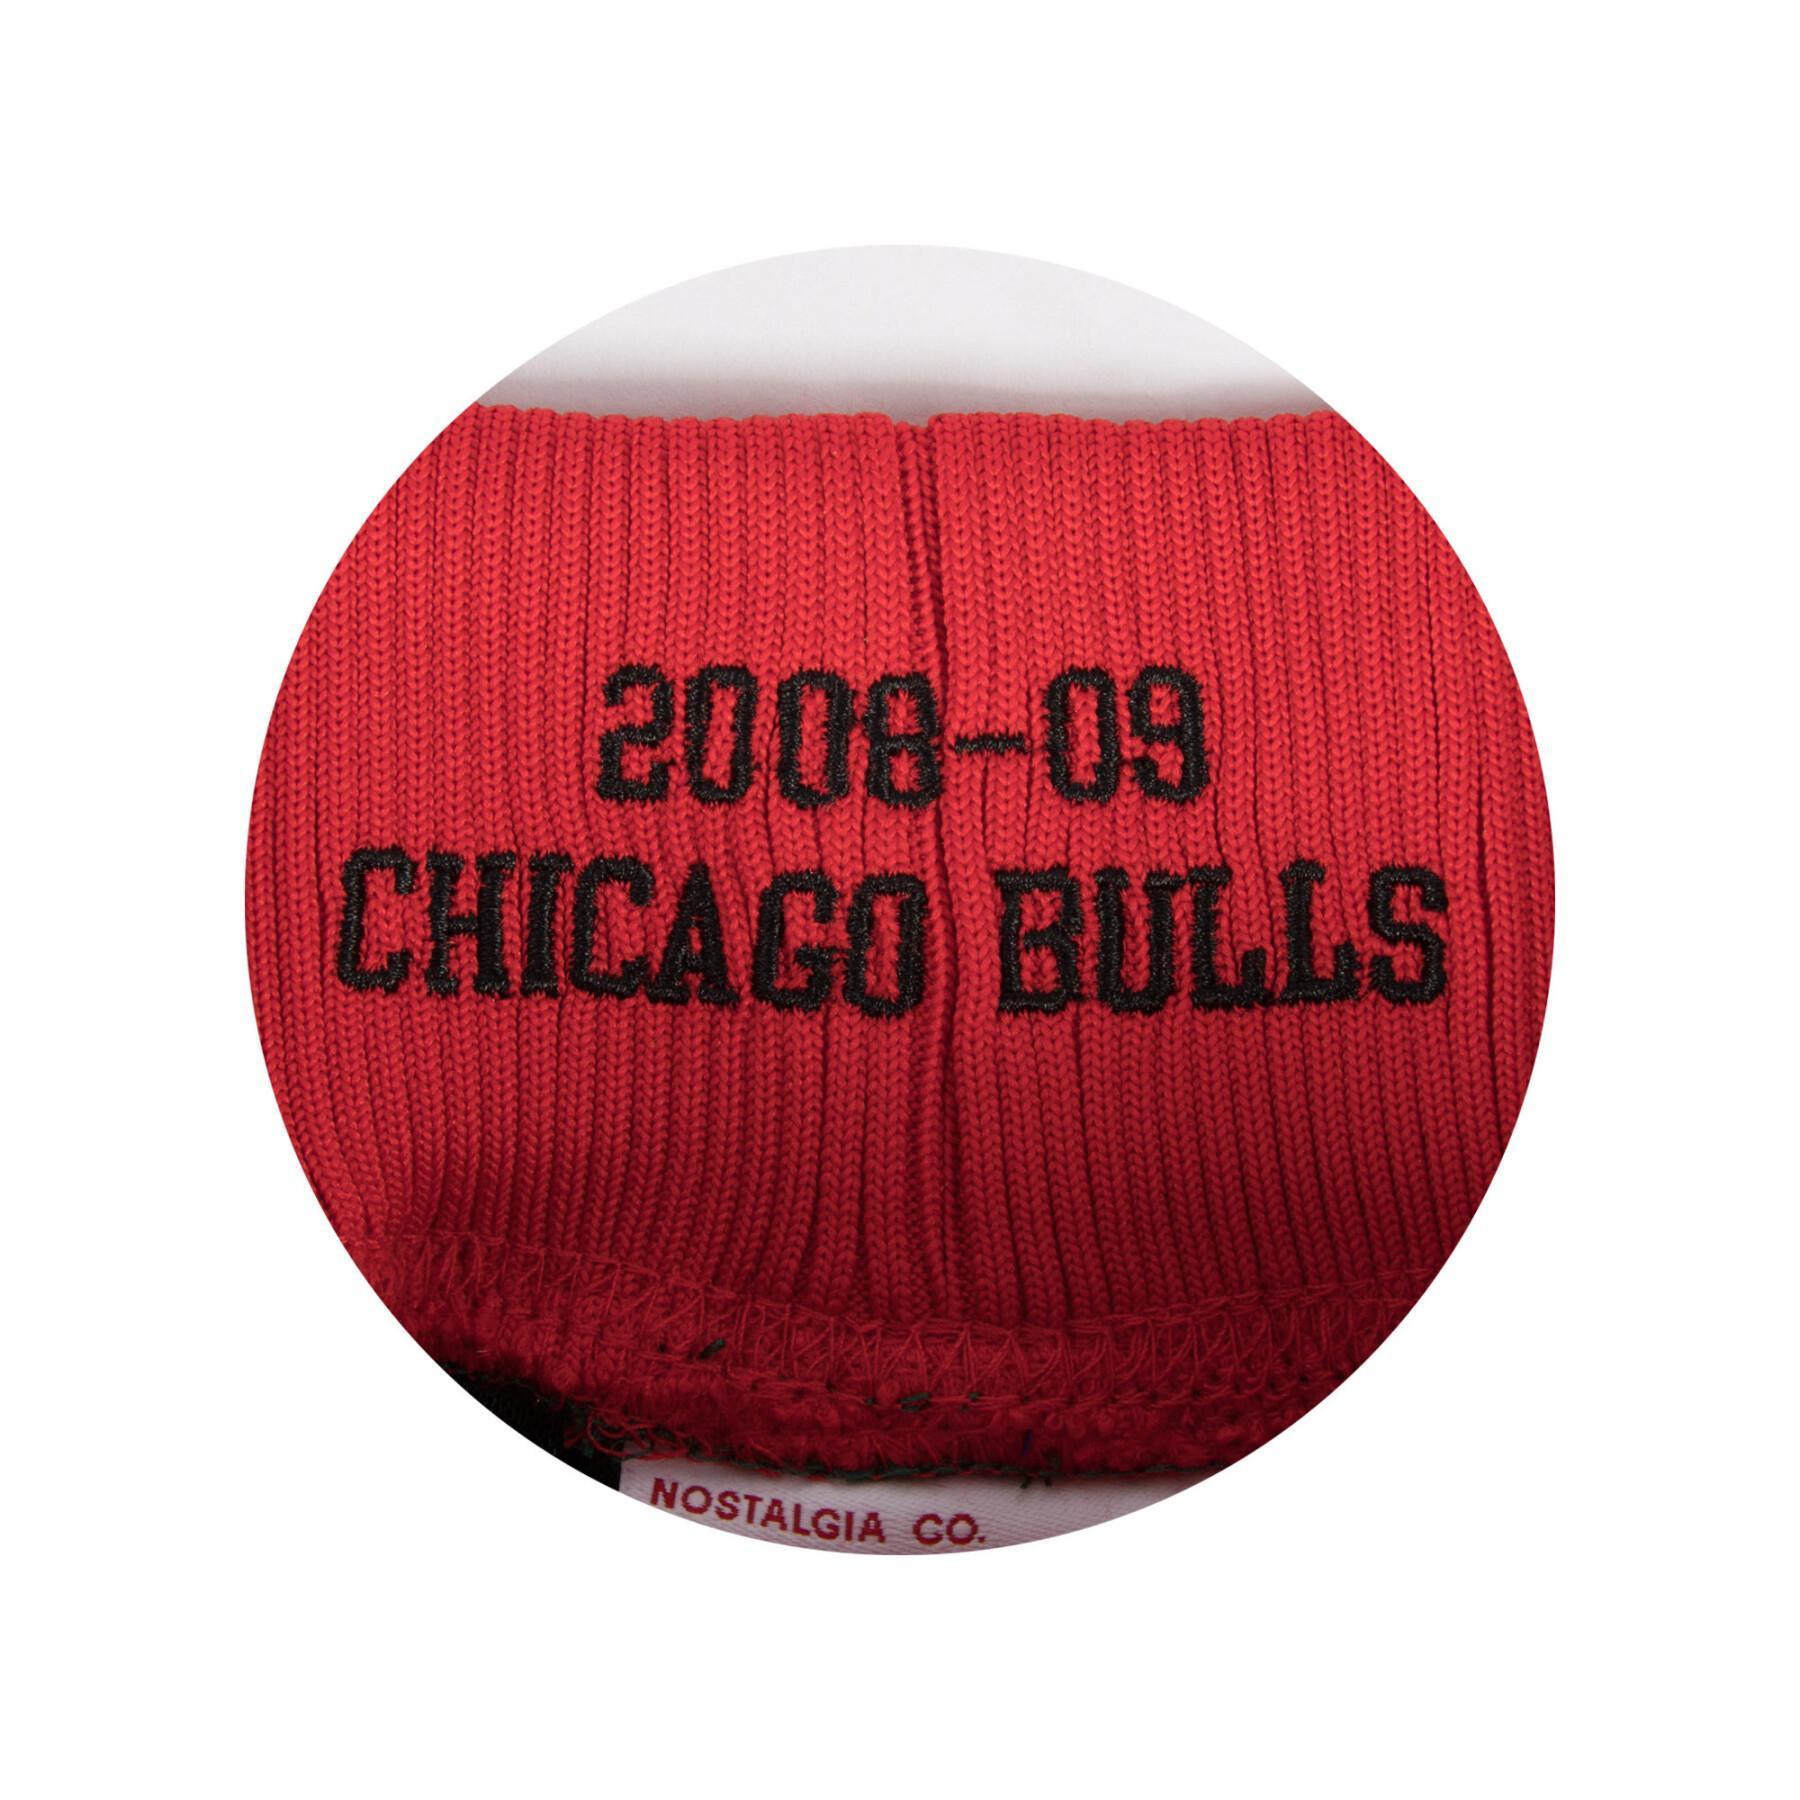 Calções autênticos Chicago Bulls